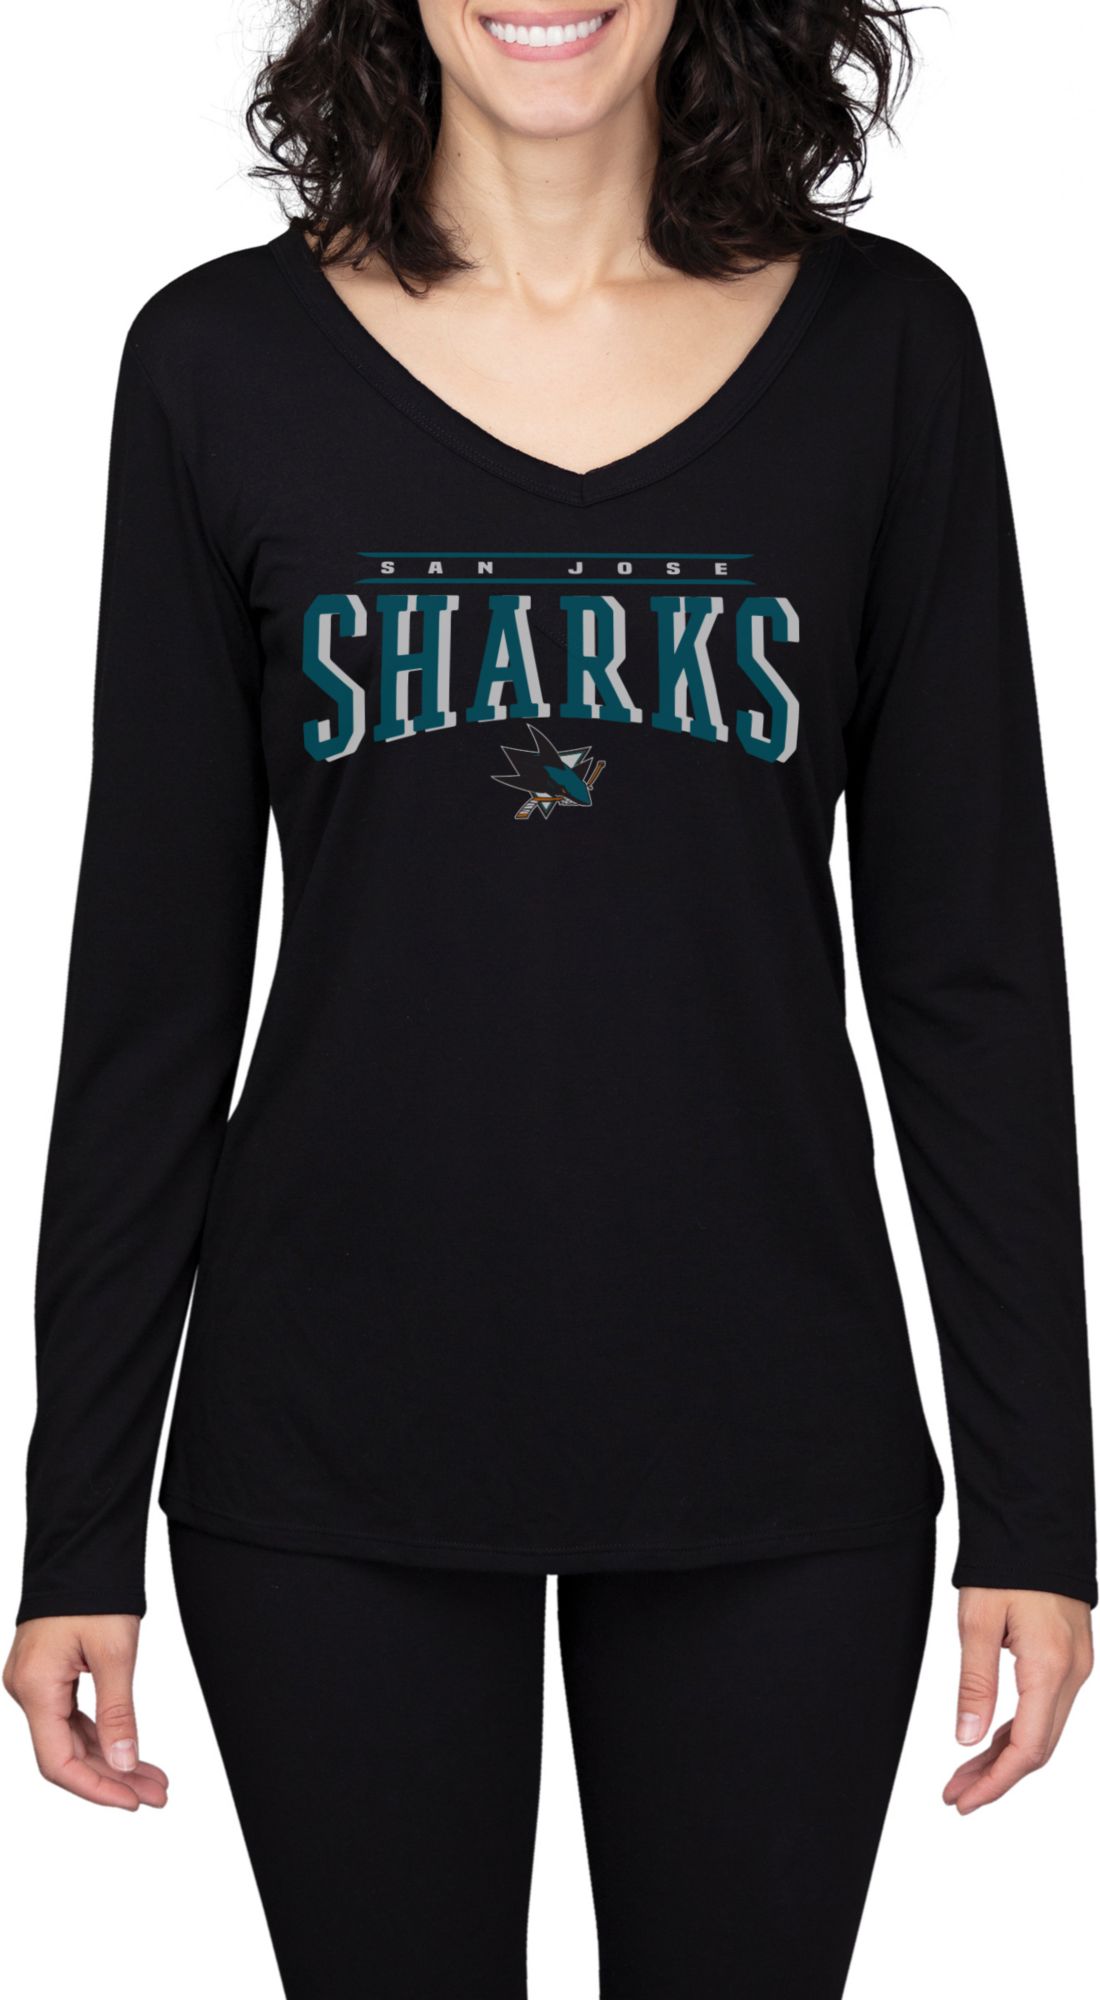 san jose sharks shirts womens